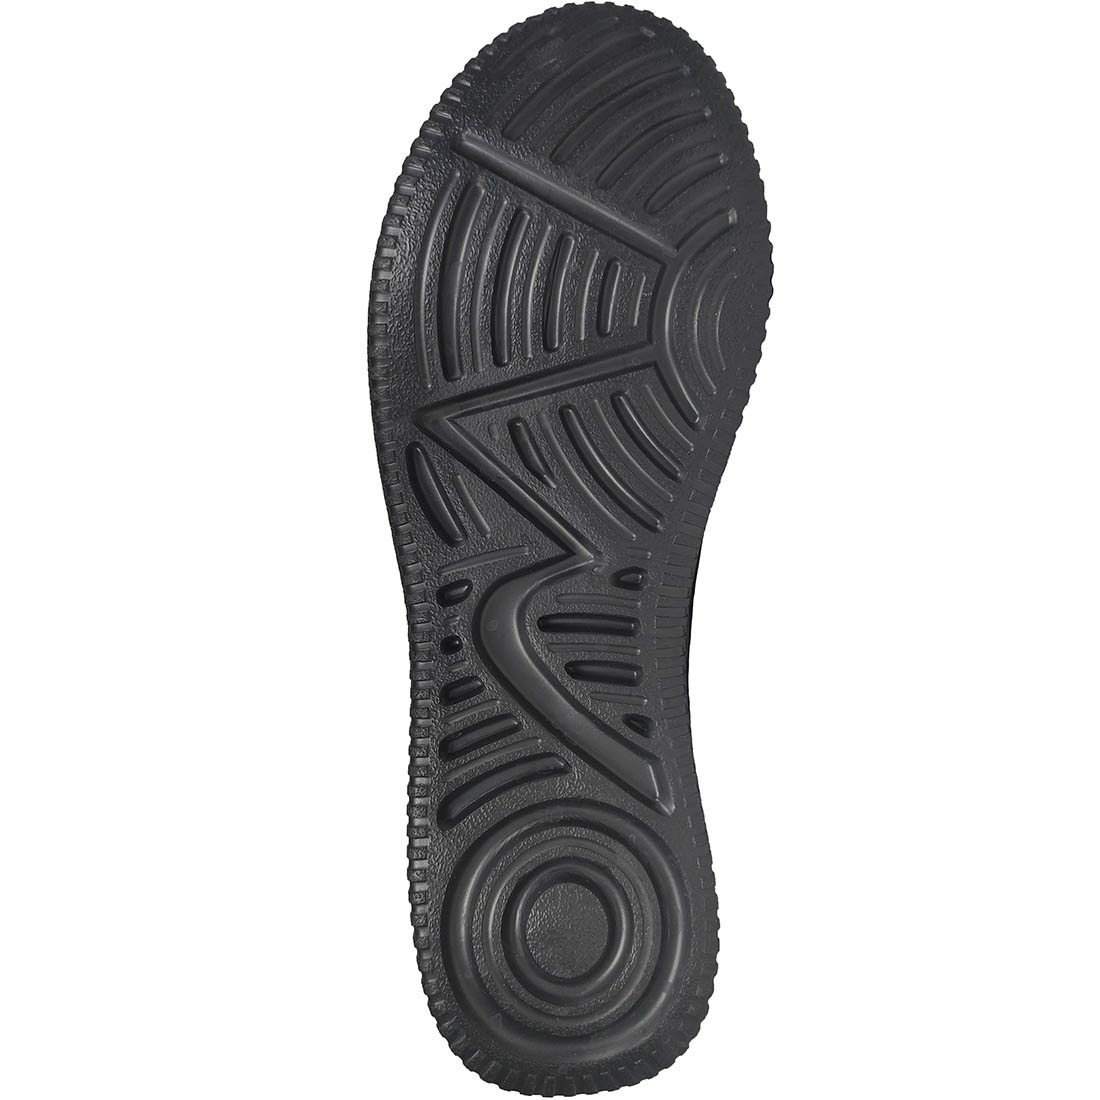 Αθλητικά Παπούτσια Luttoon 4132 Μαύρο